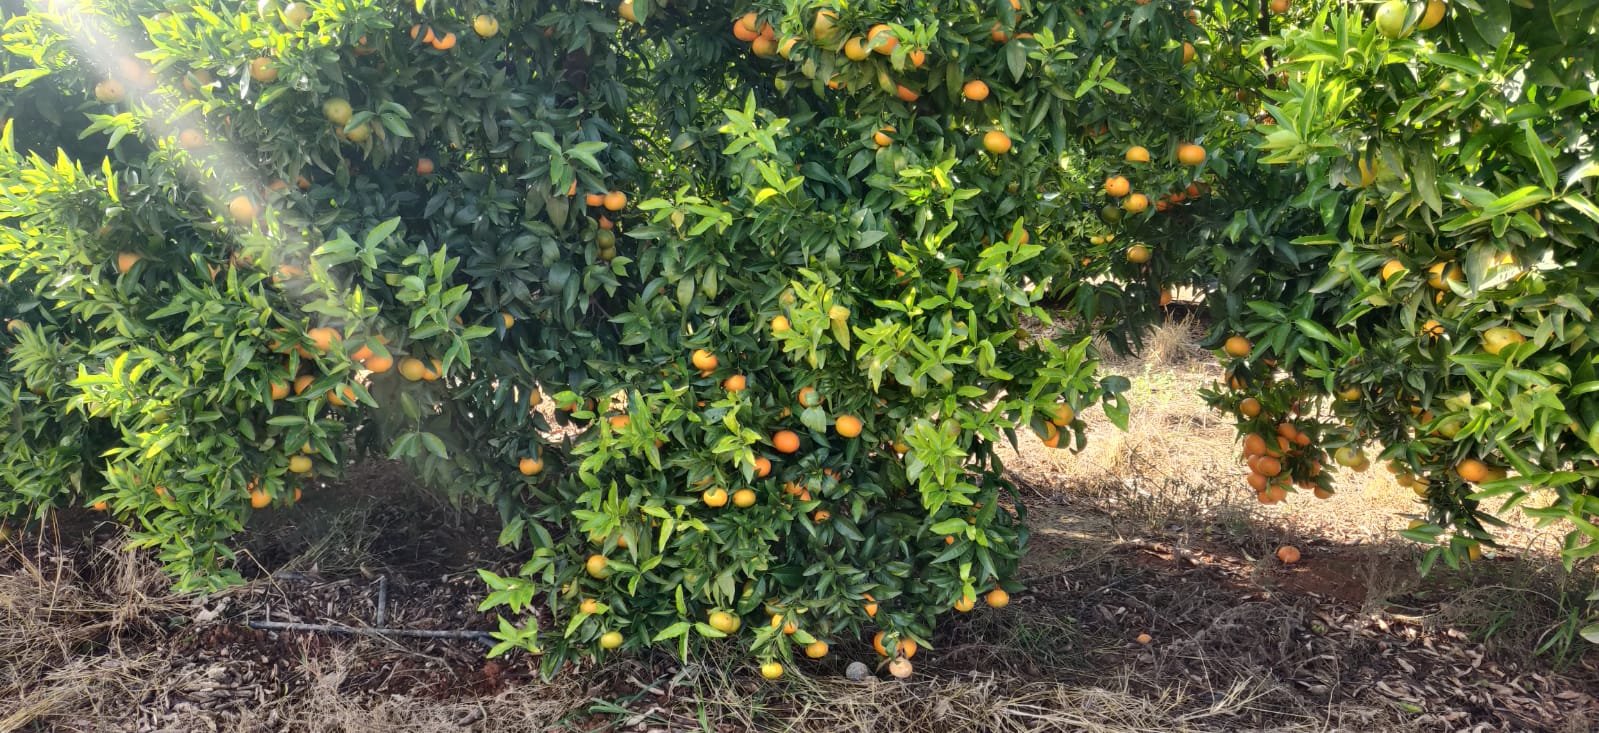 Se vende cosecha mandarina clemenules sin tratar